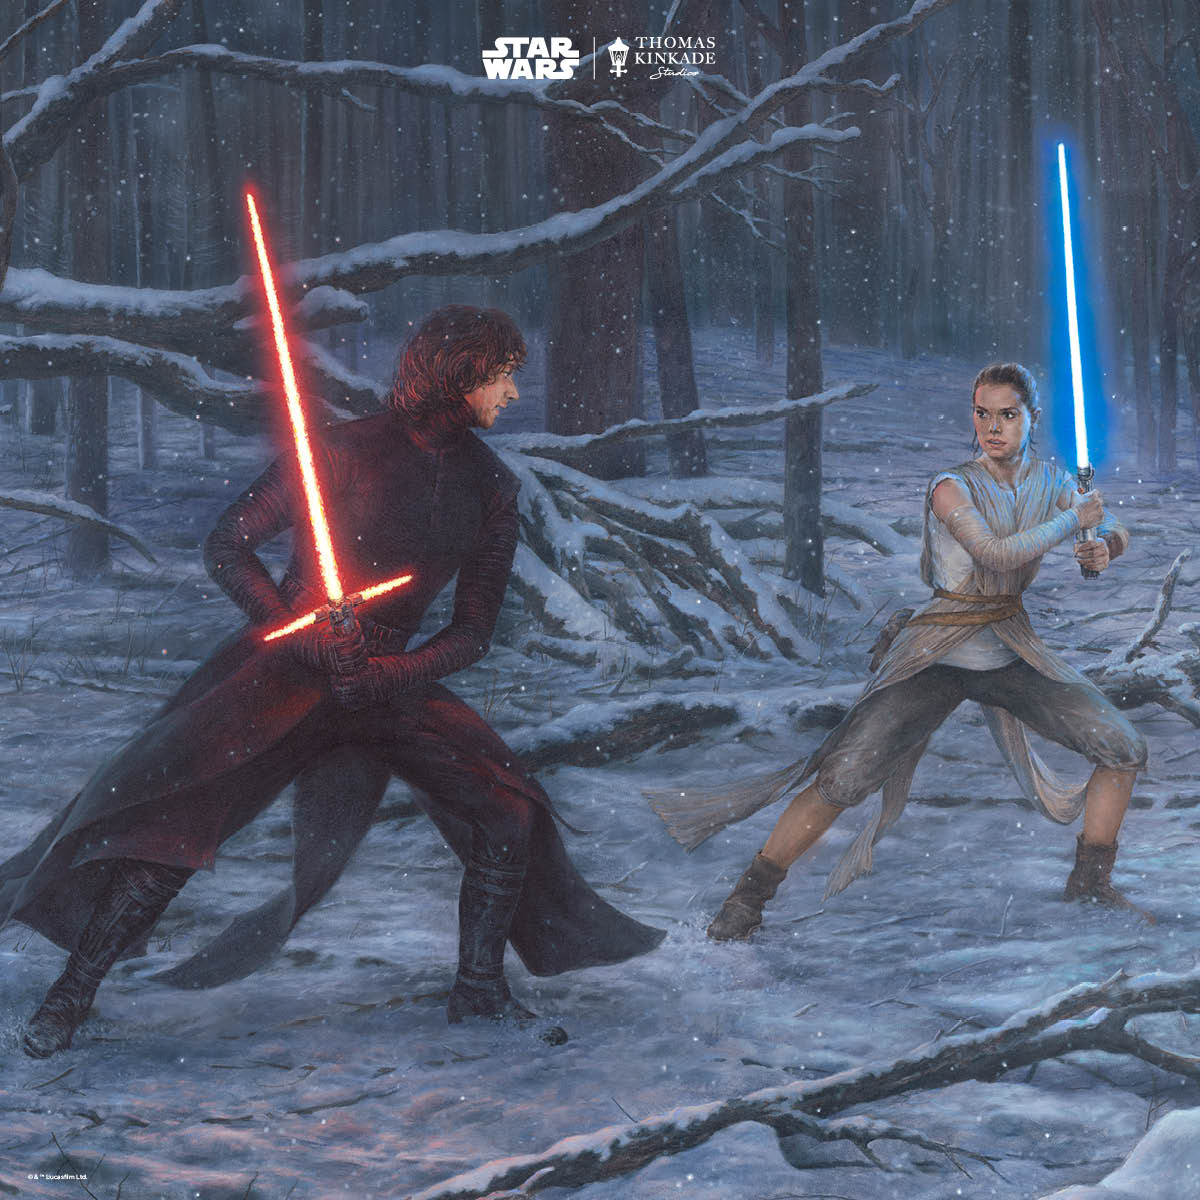 The Duel: Rey vs. Ren